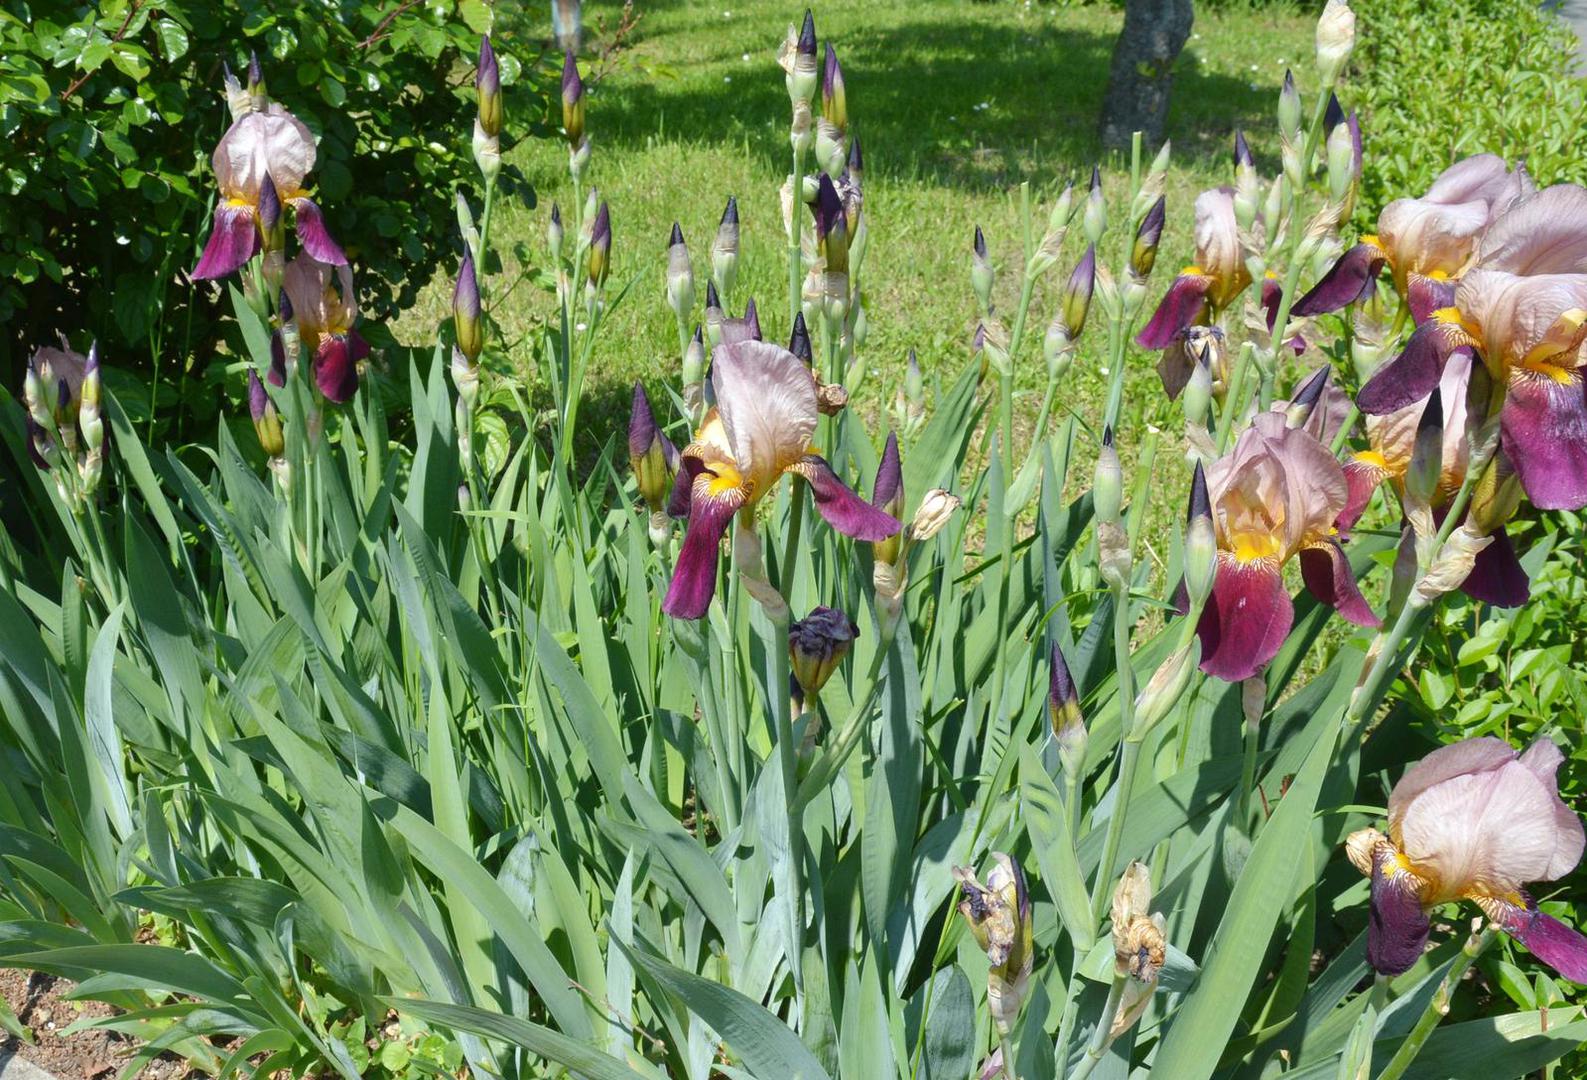 Osim imena iris i perunika, u kajkavskim dijelovima zemlje ovaj cvijet zovu ljeljuja jer su jer su oni boginju Peruniku zvali Ljelja. Na dubrovačkom području taj božanski cvijet zovu bogiša.